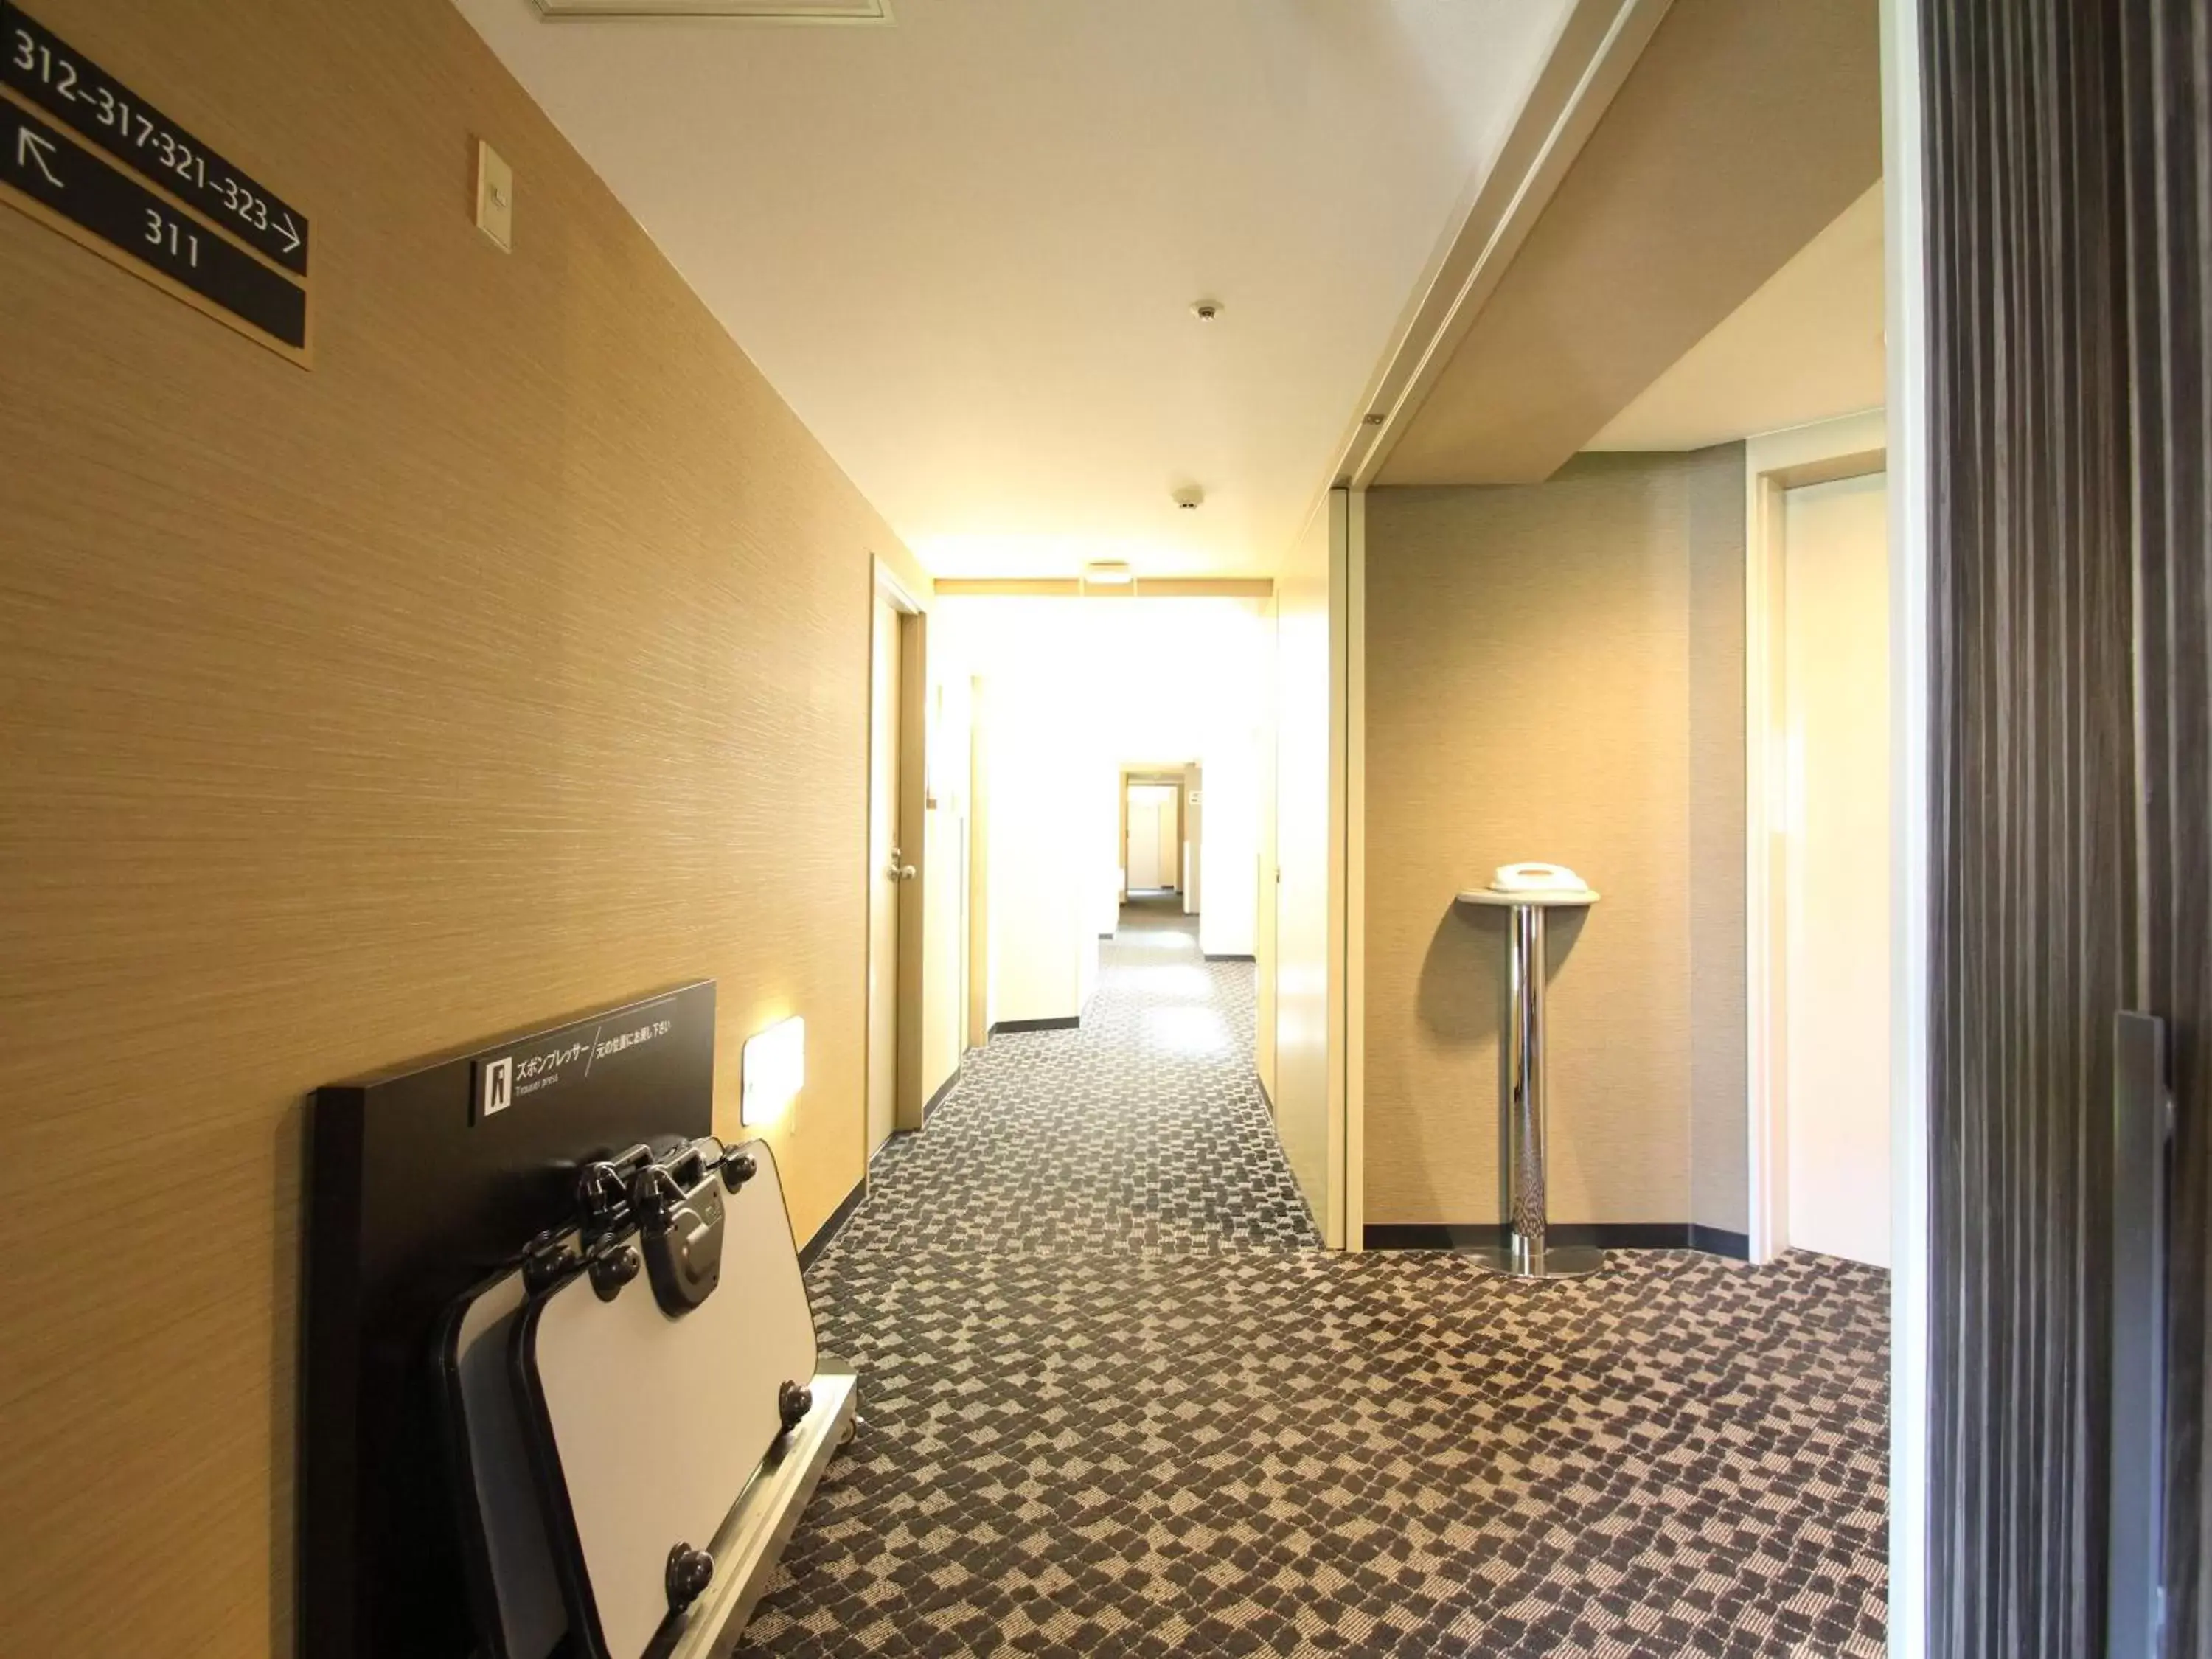 Lobby or reception in APA Hotel Fukuoka Watanabe Dori EXCELLENT